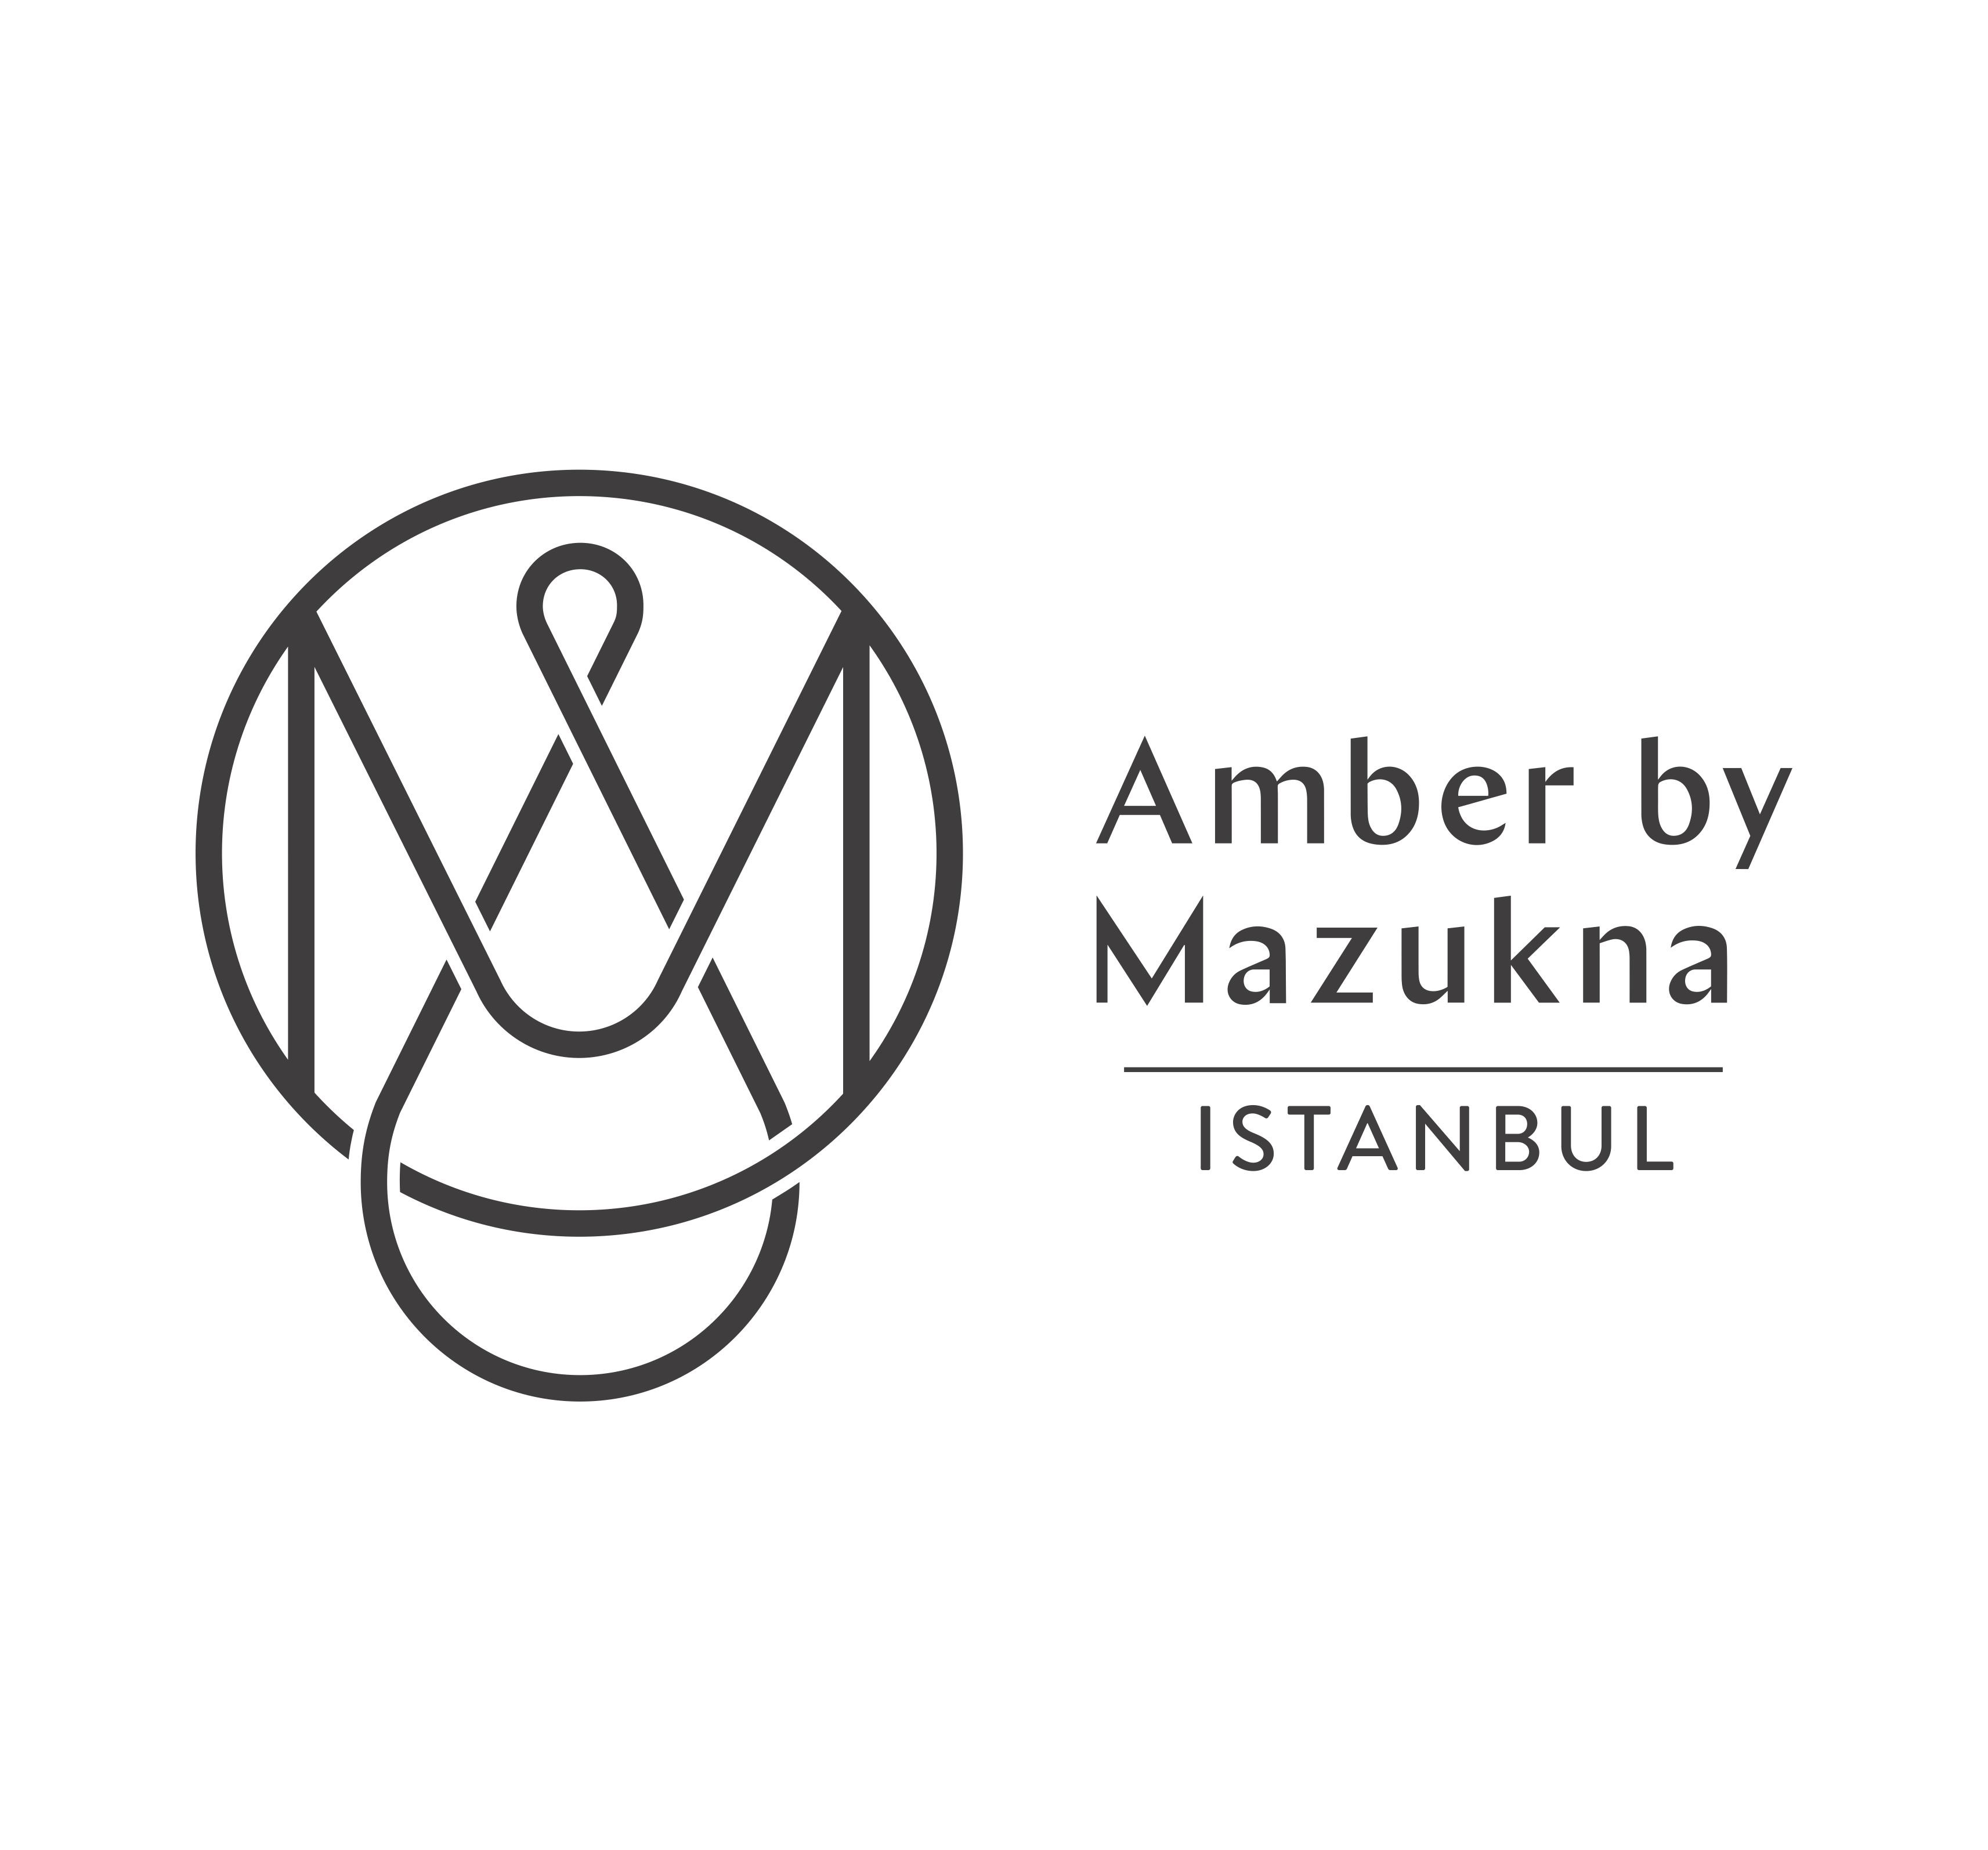 AmberbyMazukna